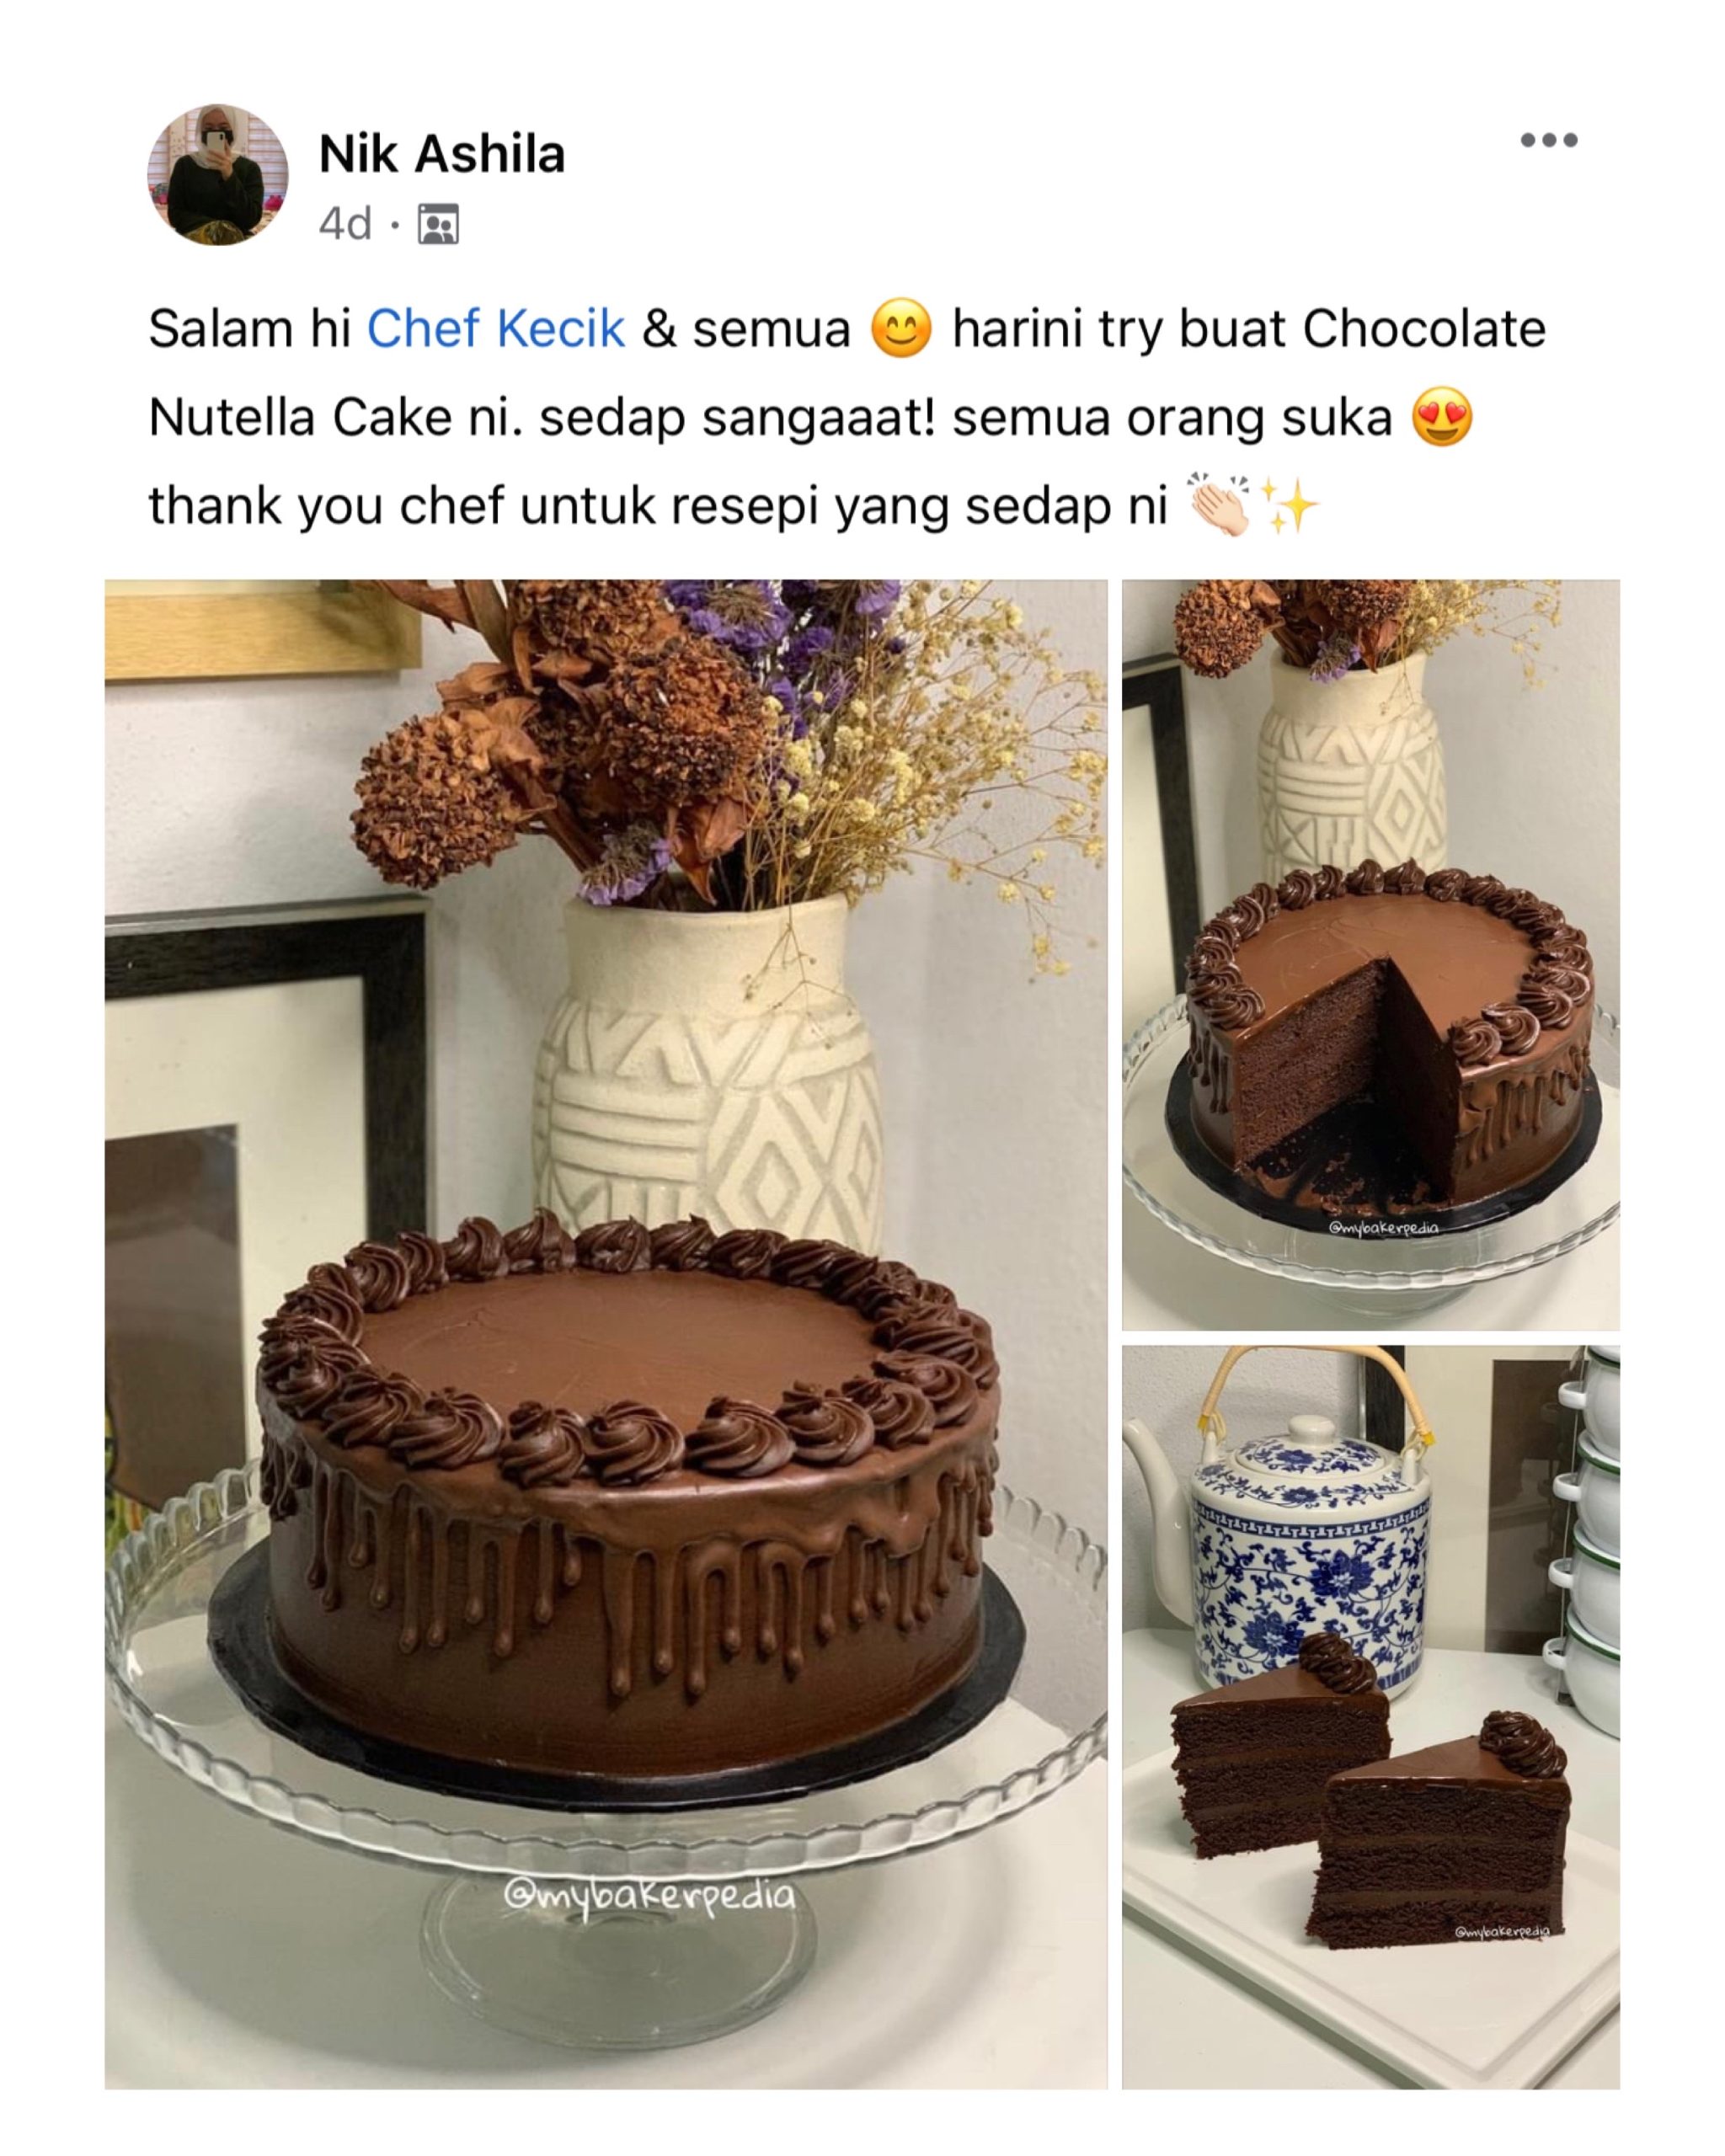 Testimoni daripada Nik Ashila berkenaan Chocolate Nutella Cake hasil daripada ajaran kelas online Chef Kecik